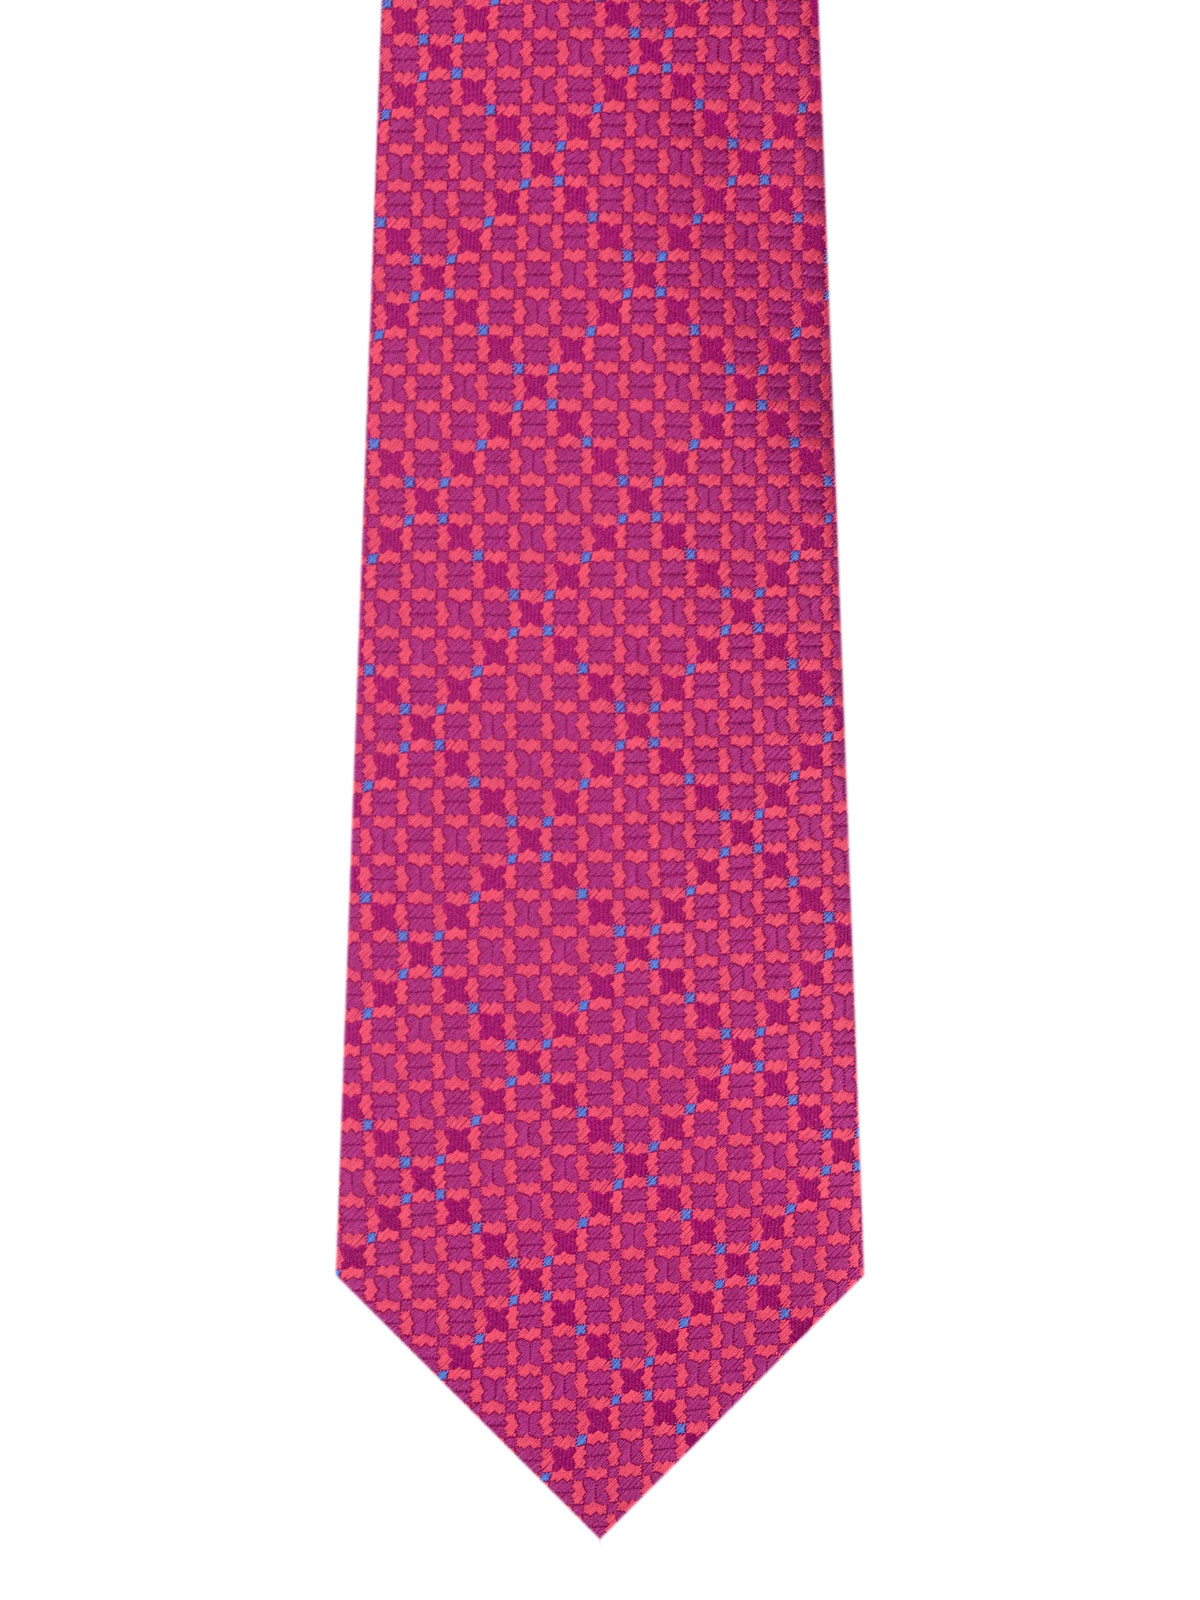 Вратовръзка в циклама на цветни фигури - 10167 - 25.00 лв img2